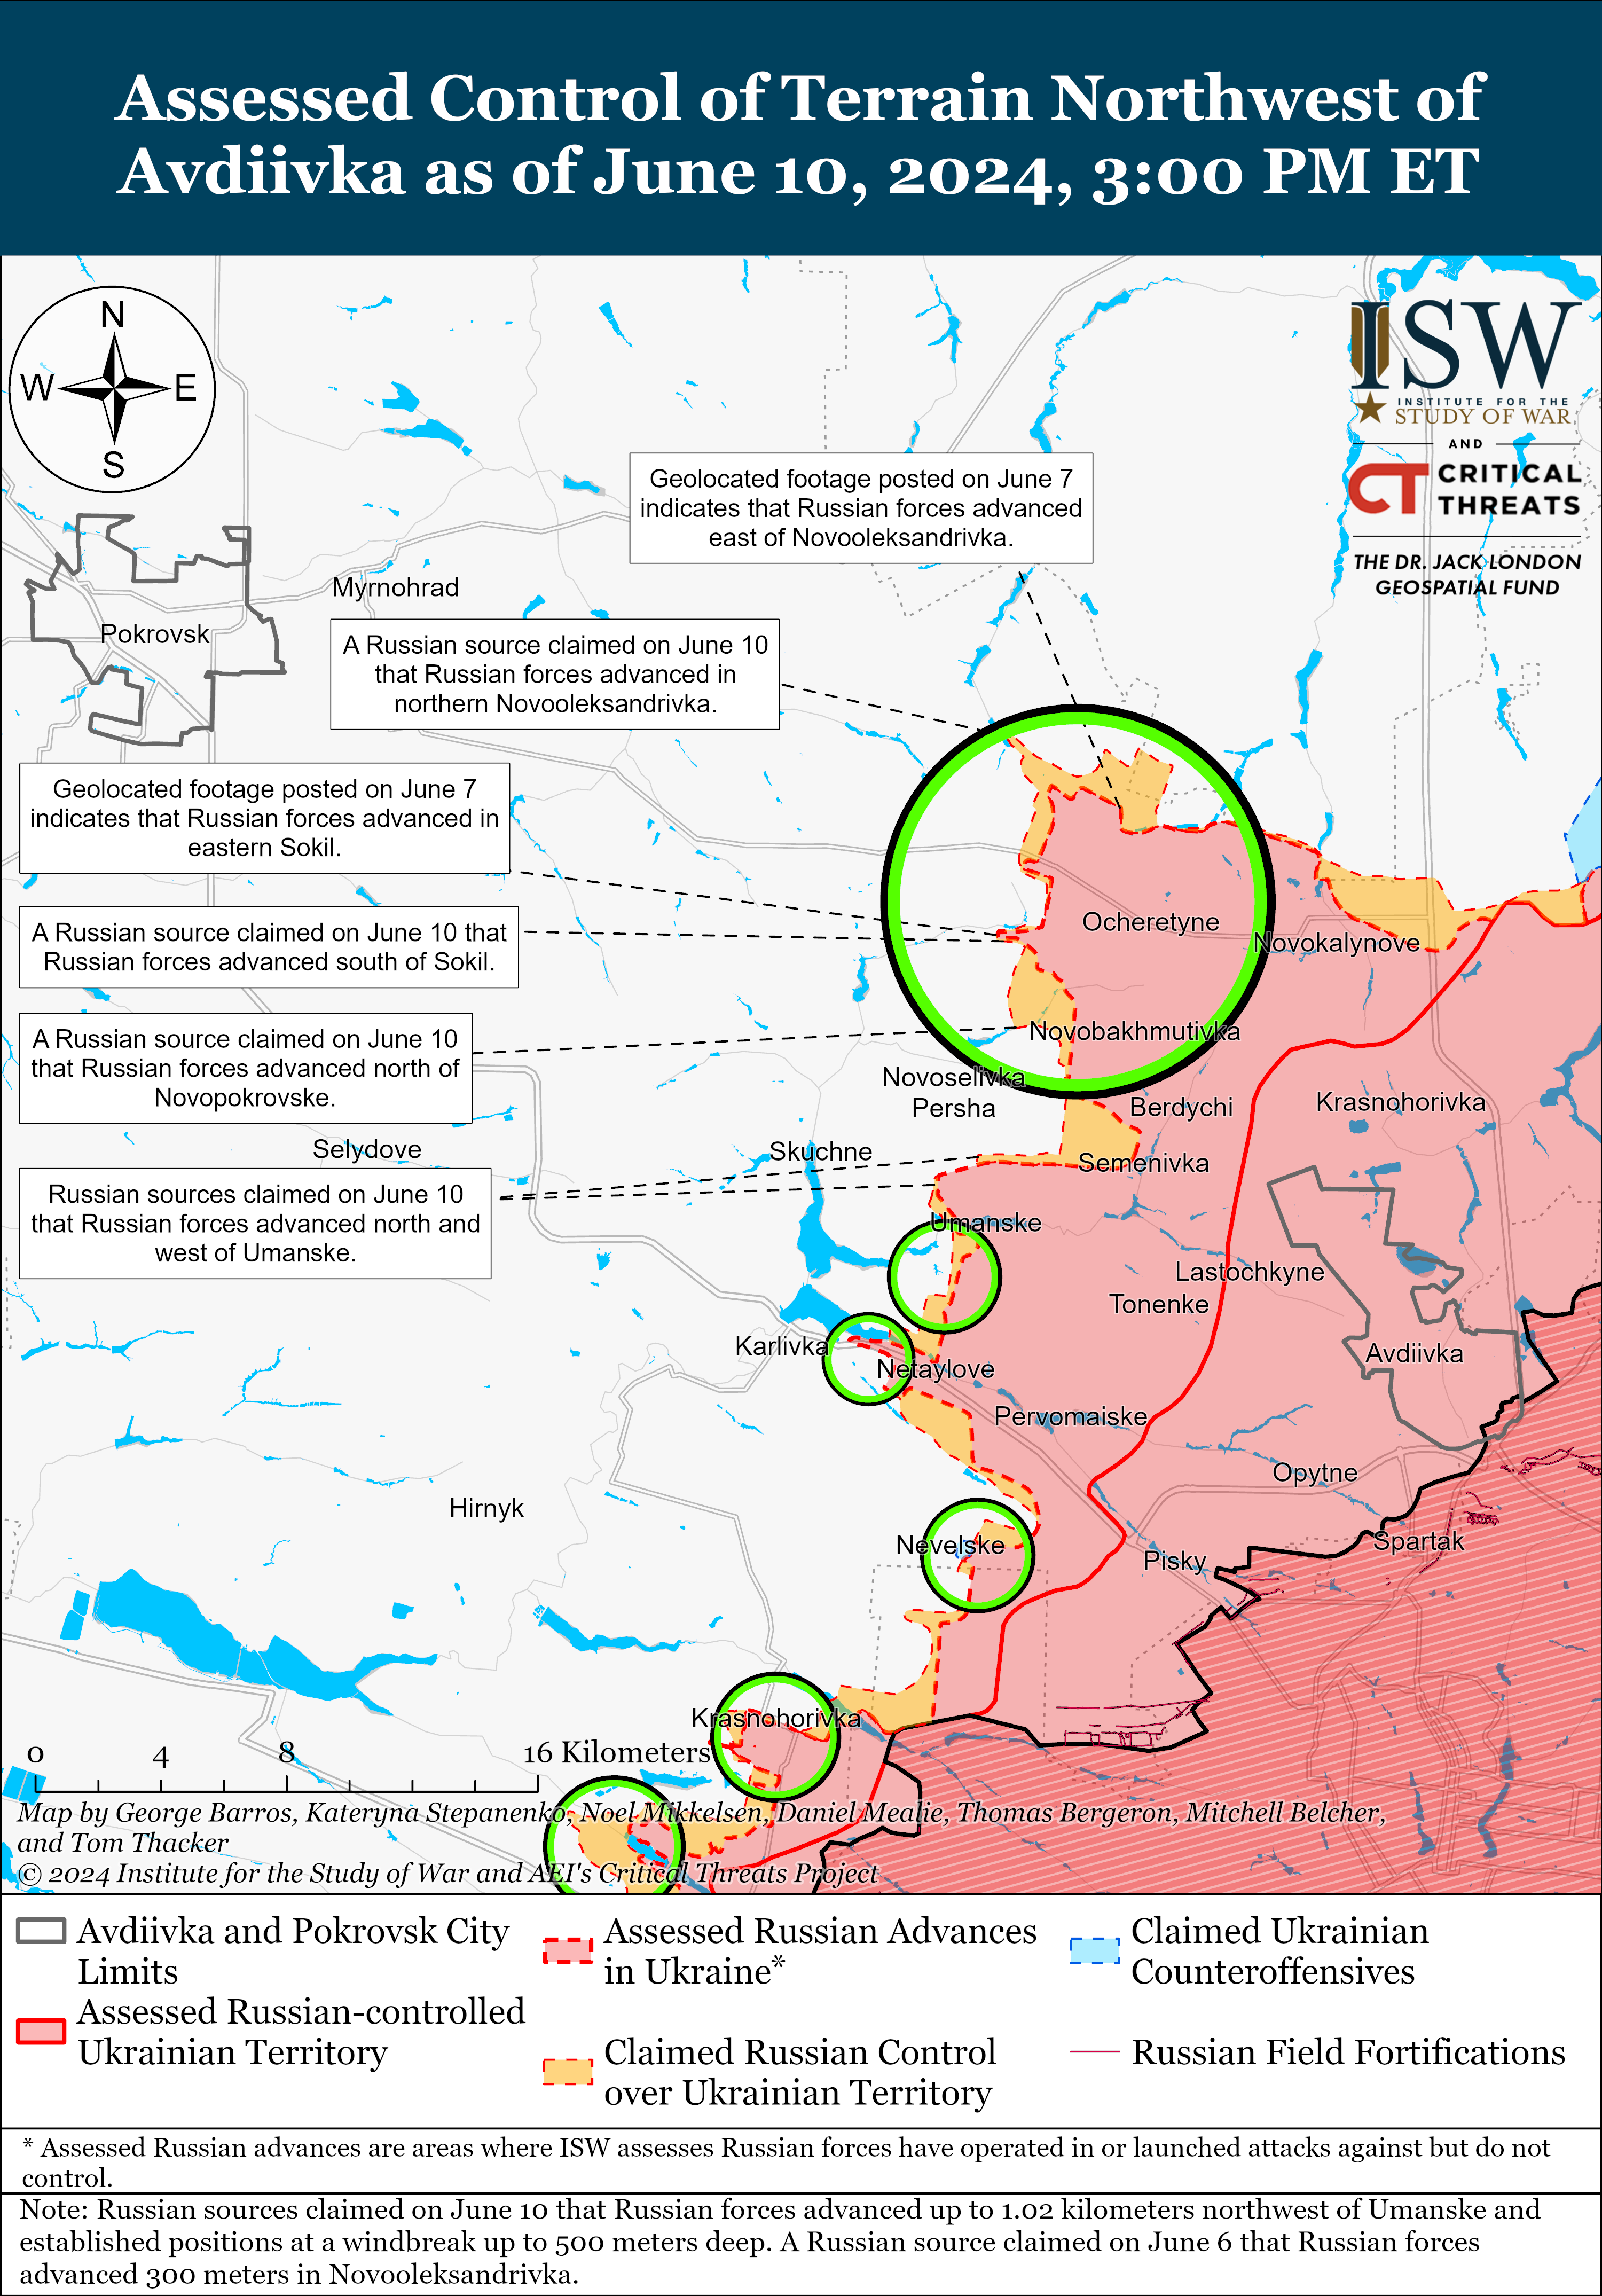 ВСУ восстановили позиции под Донецком, а РФ могла оккупировать Старомайорское: карты ISW